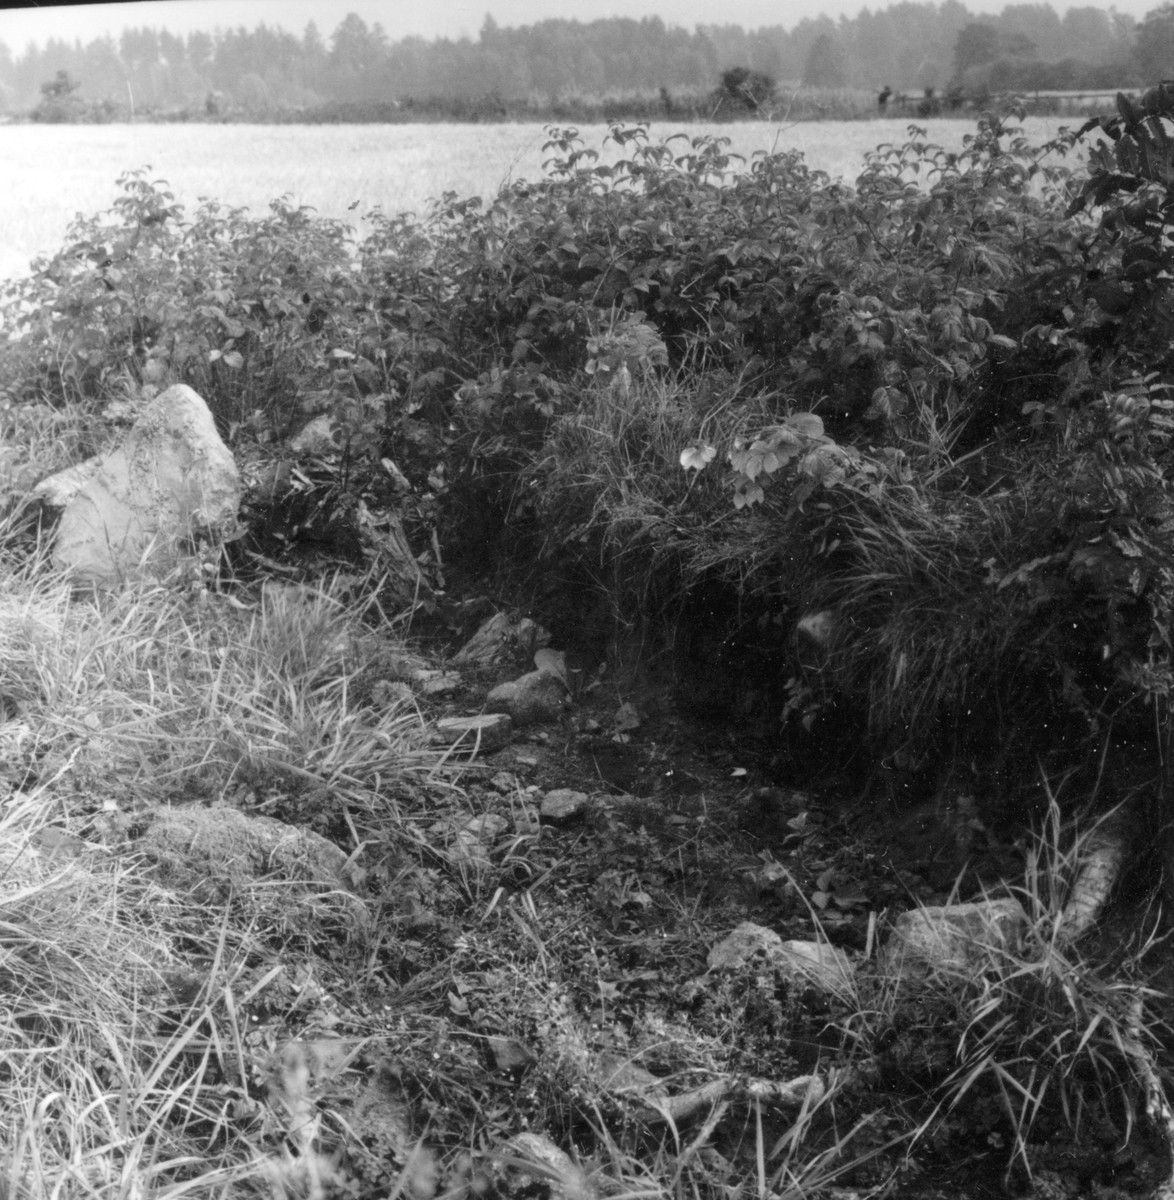 Utgrävningsbilder:
Röse i Ålbo, September 1969.